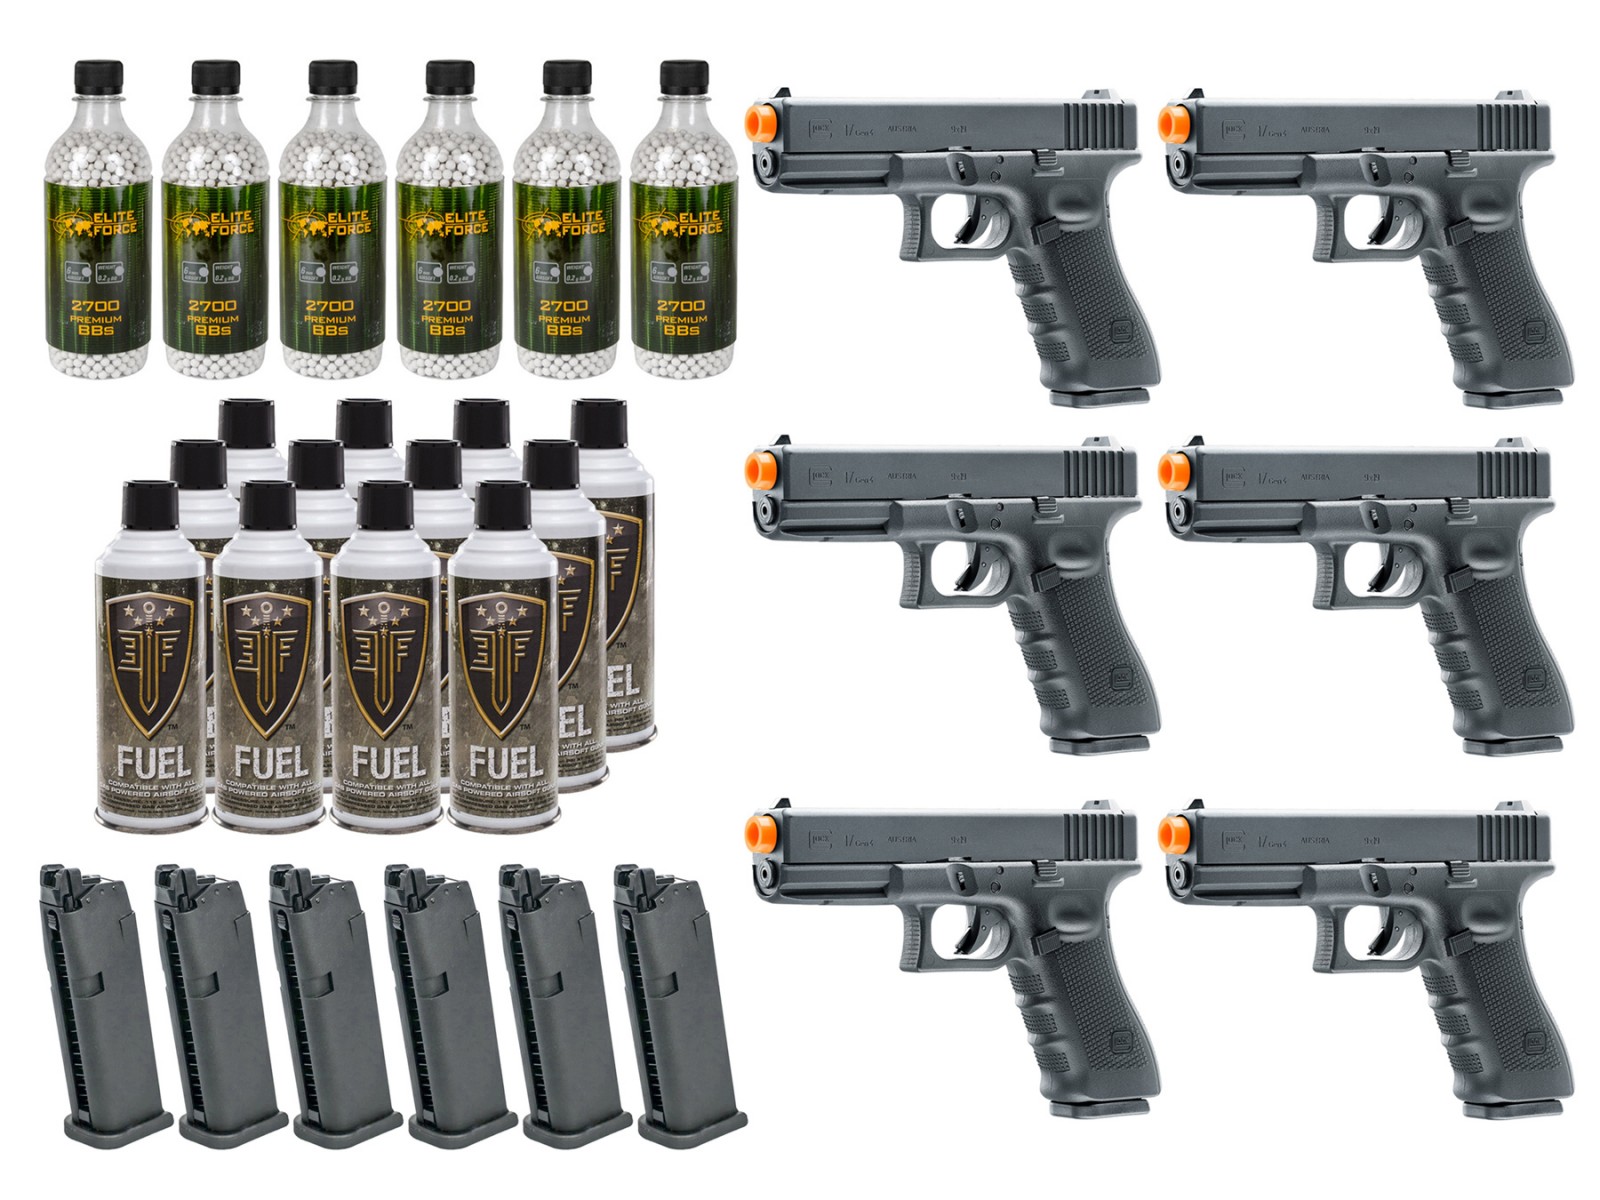 6 Umarex Elite Force Glock G17 Gen4 GBB Airsoft Pistol Kits | Pyramyd AIR